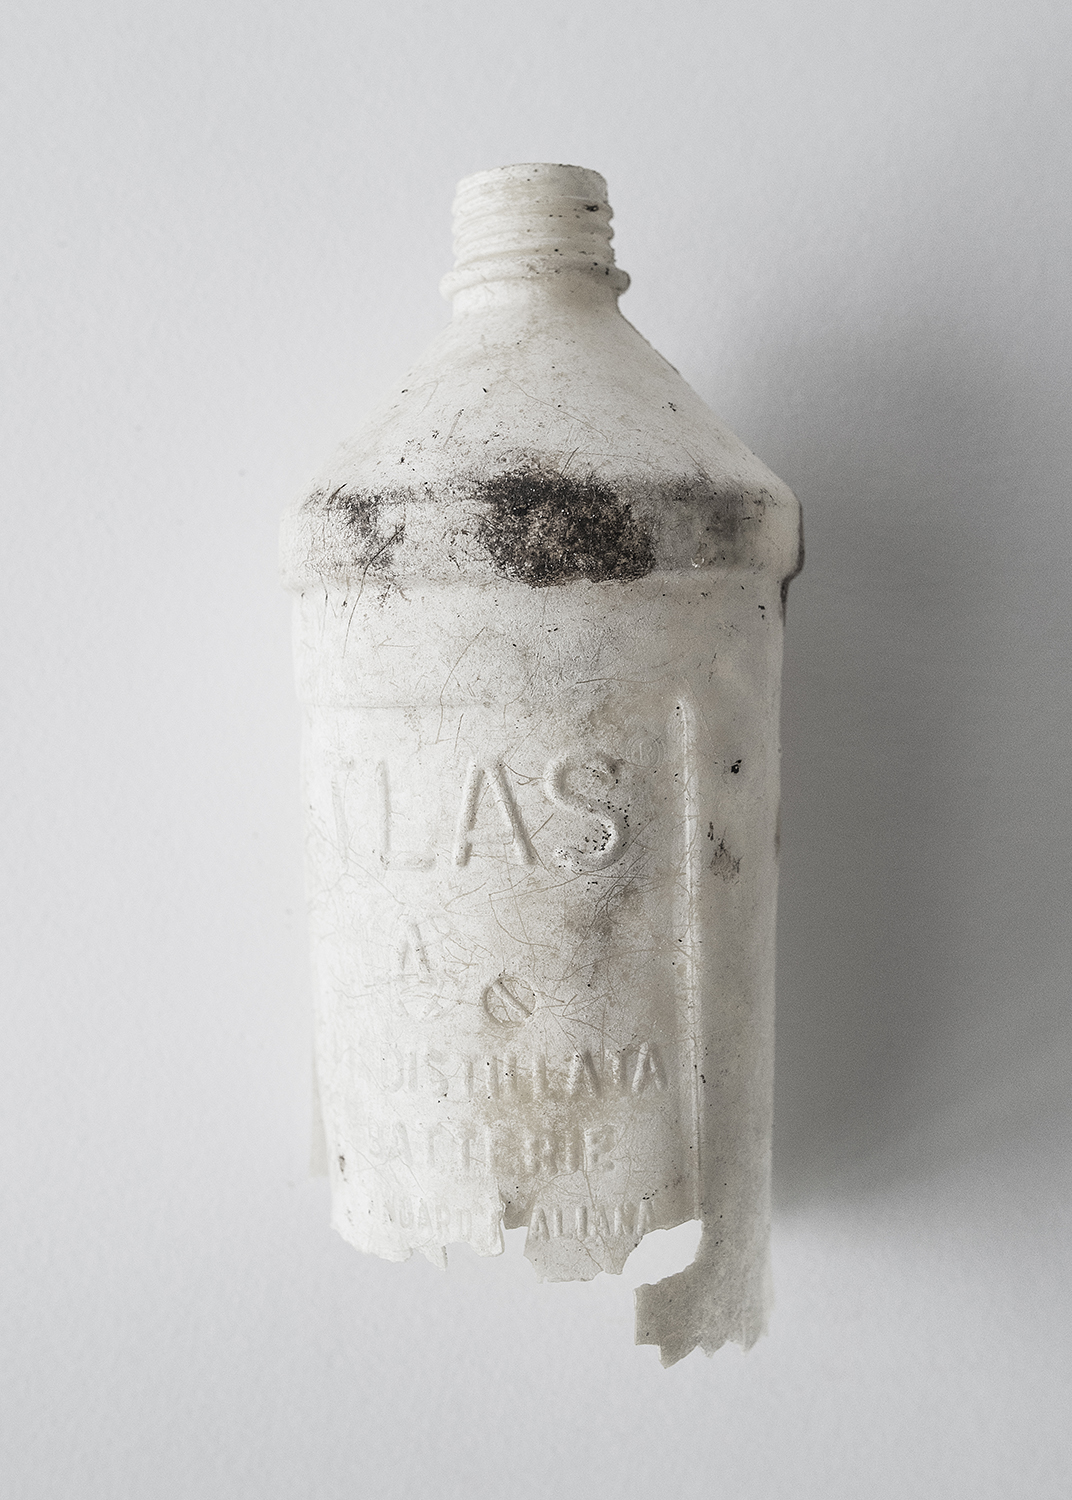  42° 06’ 20’’ N,15° 29’ 05” E, Cala delle Roselle, Isole Tremiti   Bottiglia di acqua distillata. Tempo di decomposizione 1000 anni. 